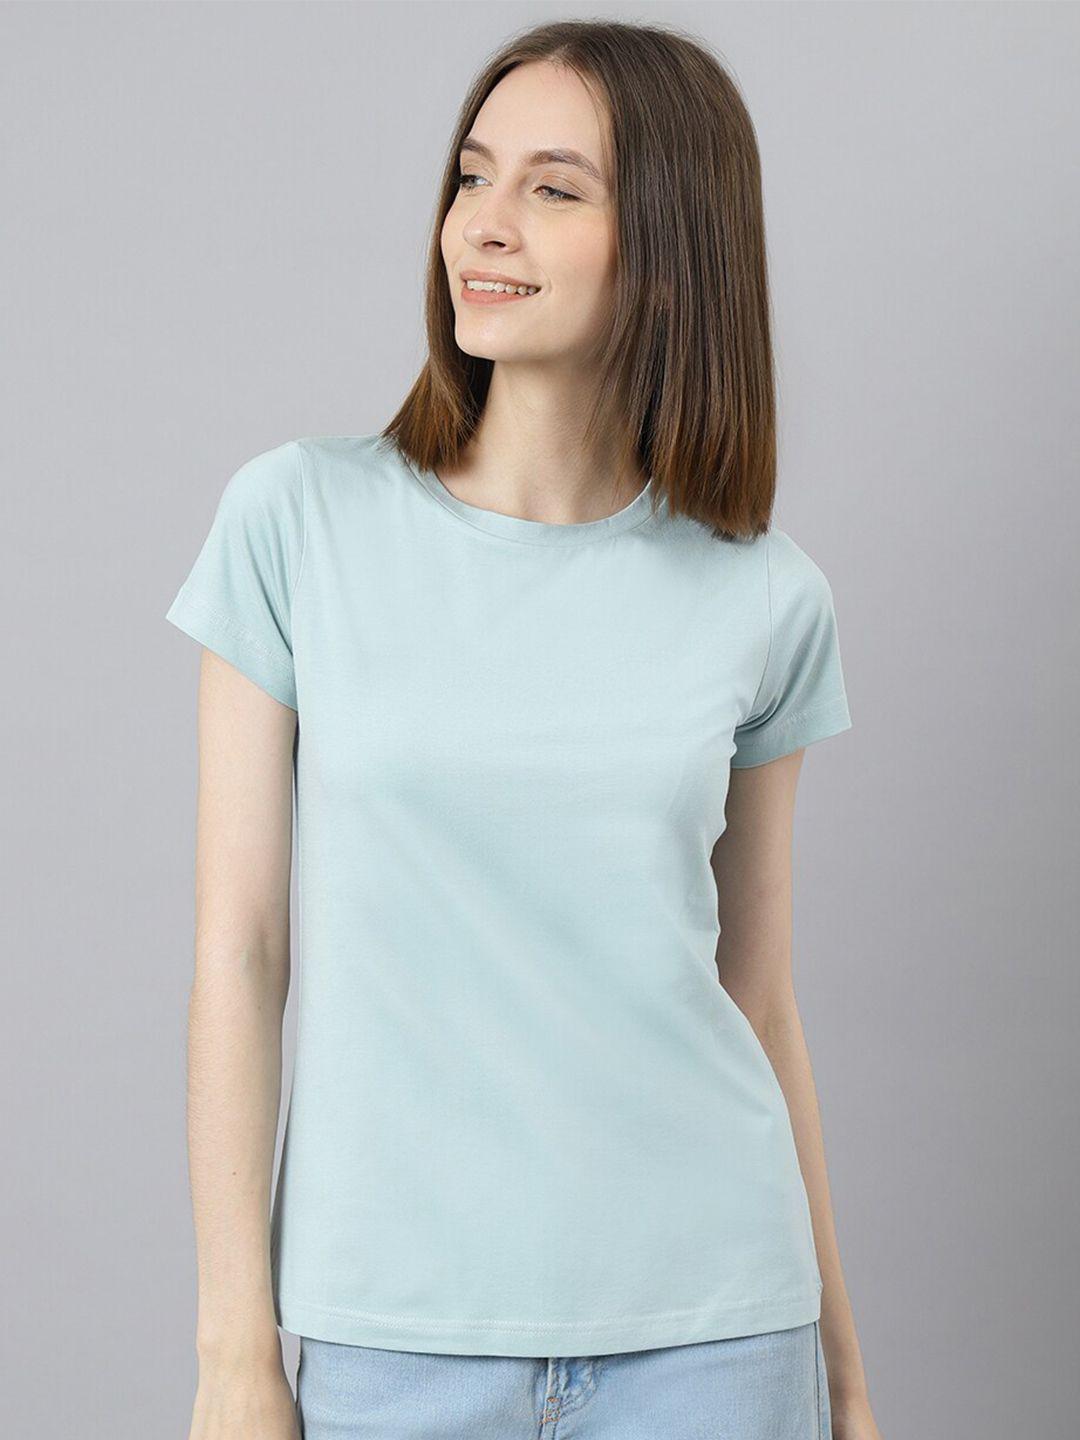 besimple women round neck t-shirt